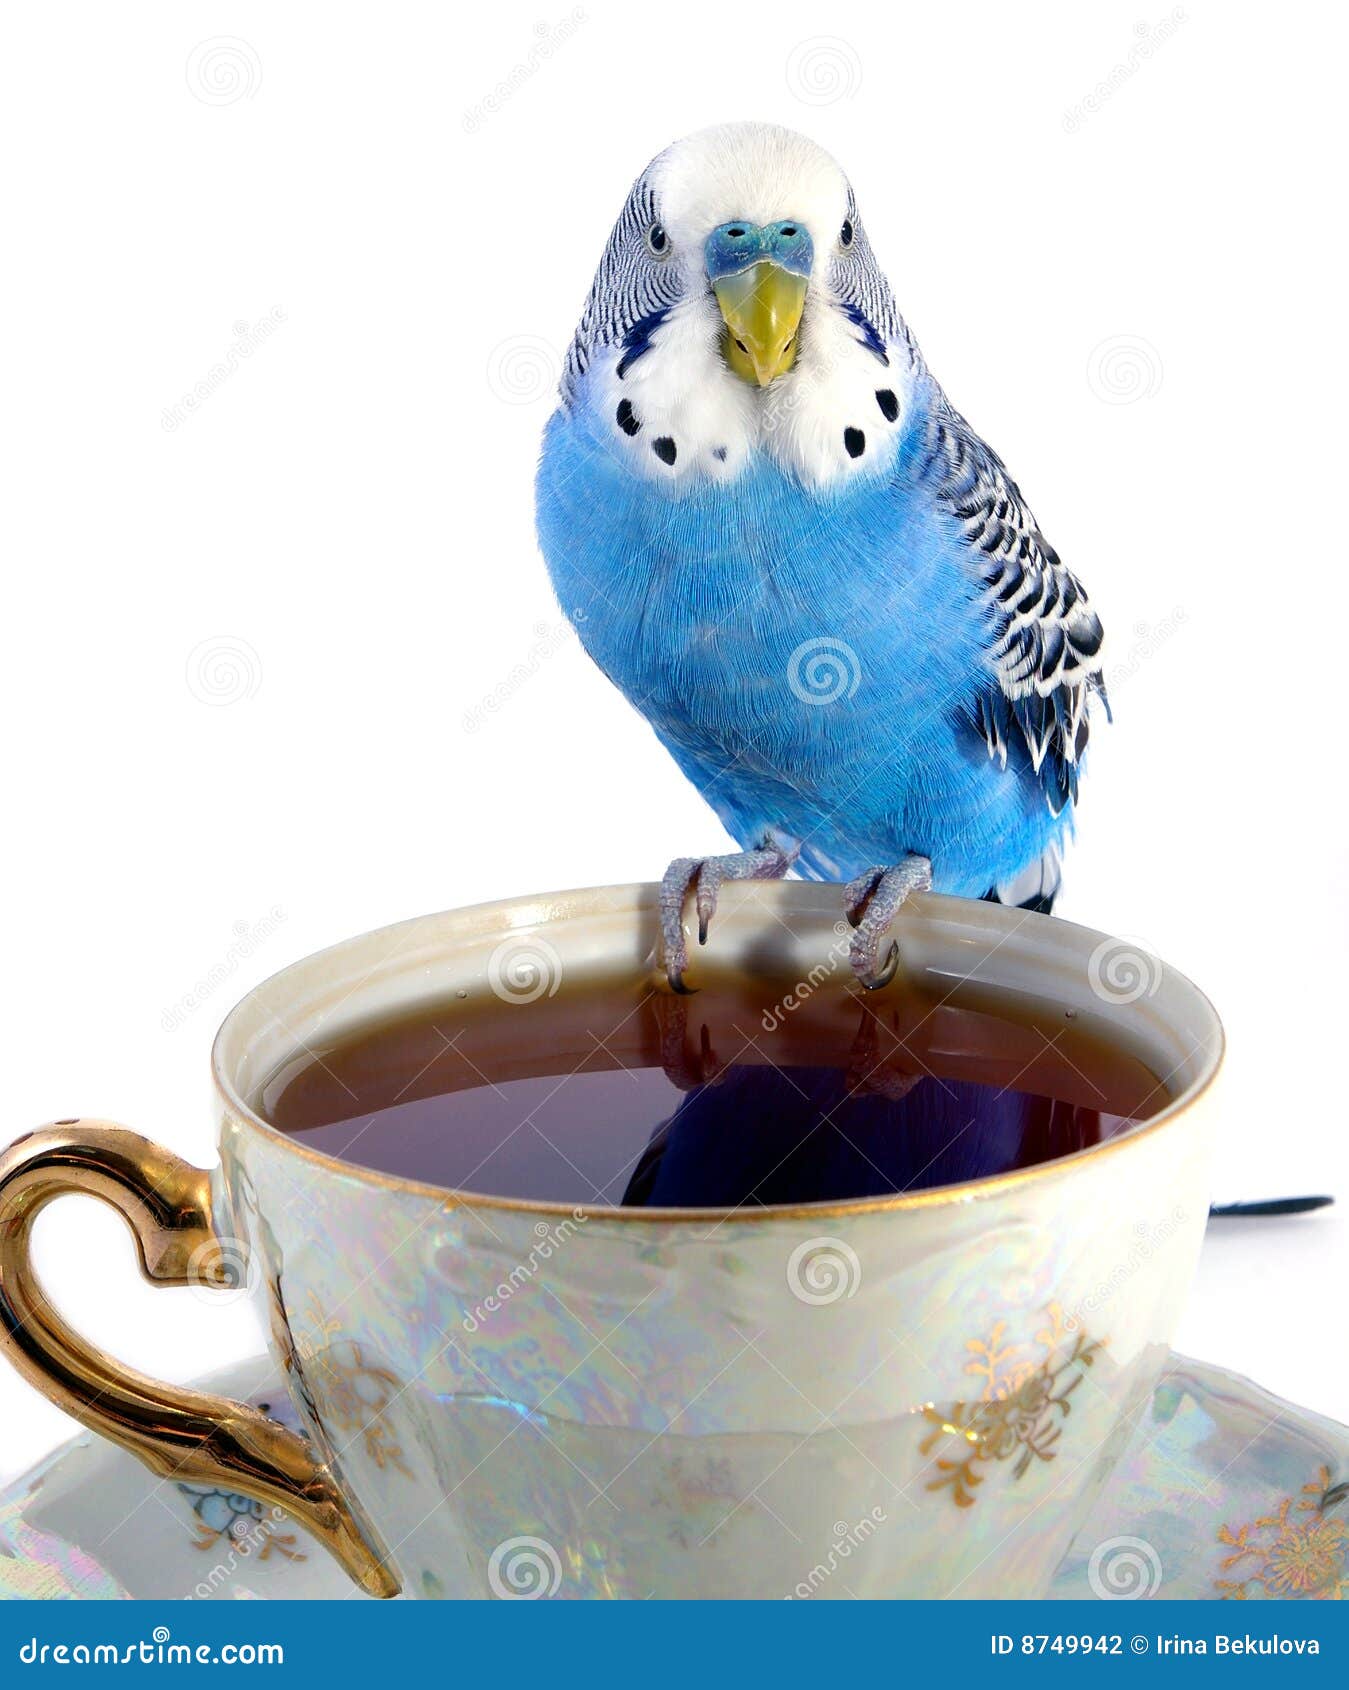 parrot-cup-tea-8749942.jpg